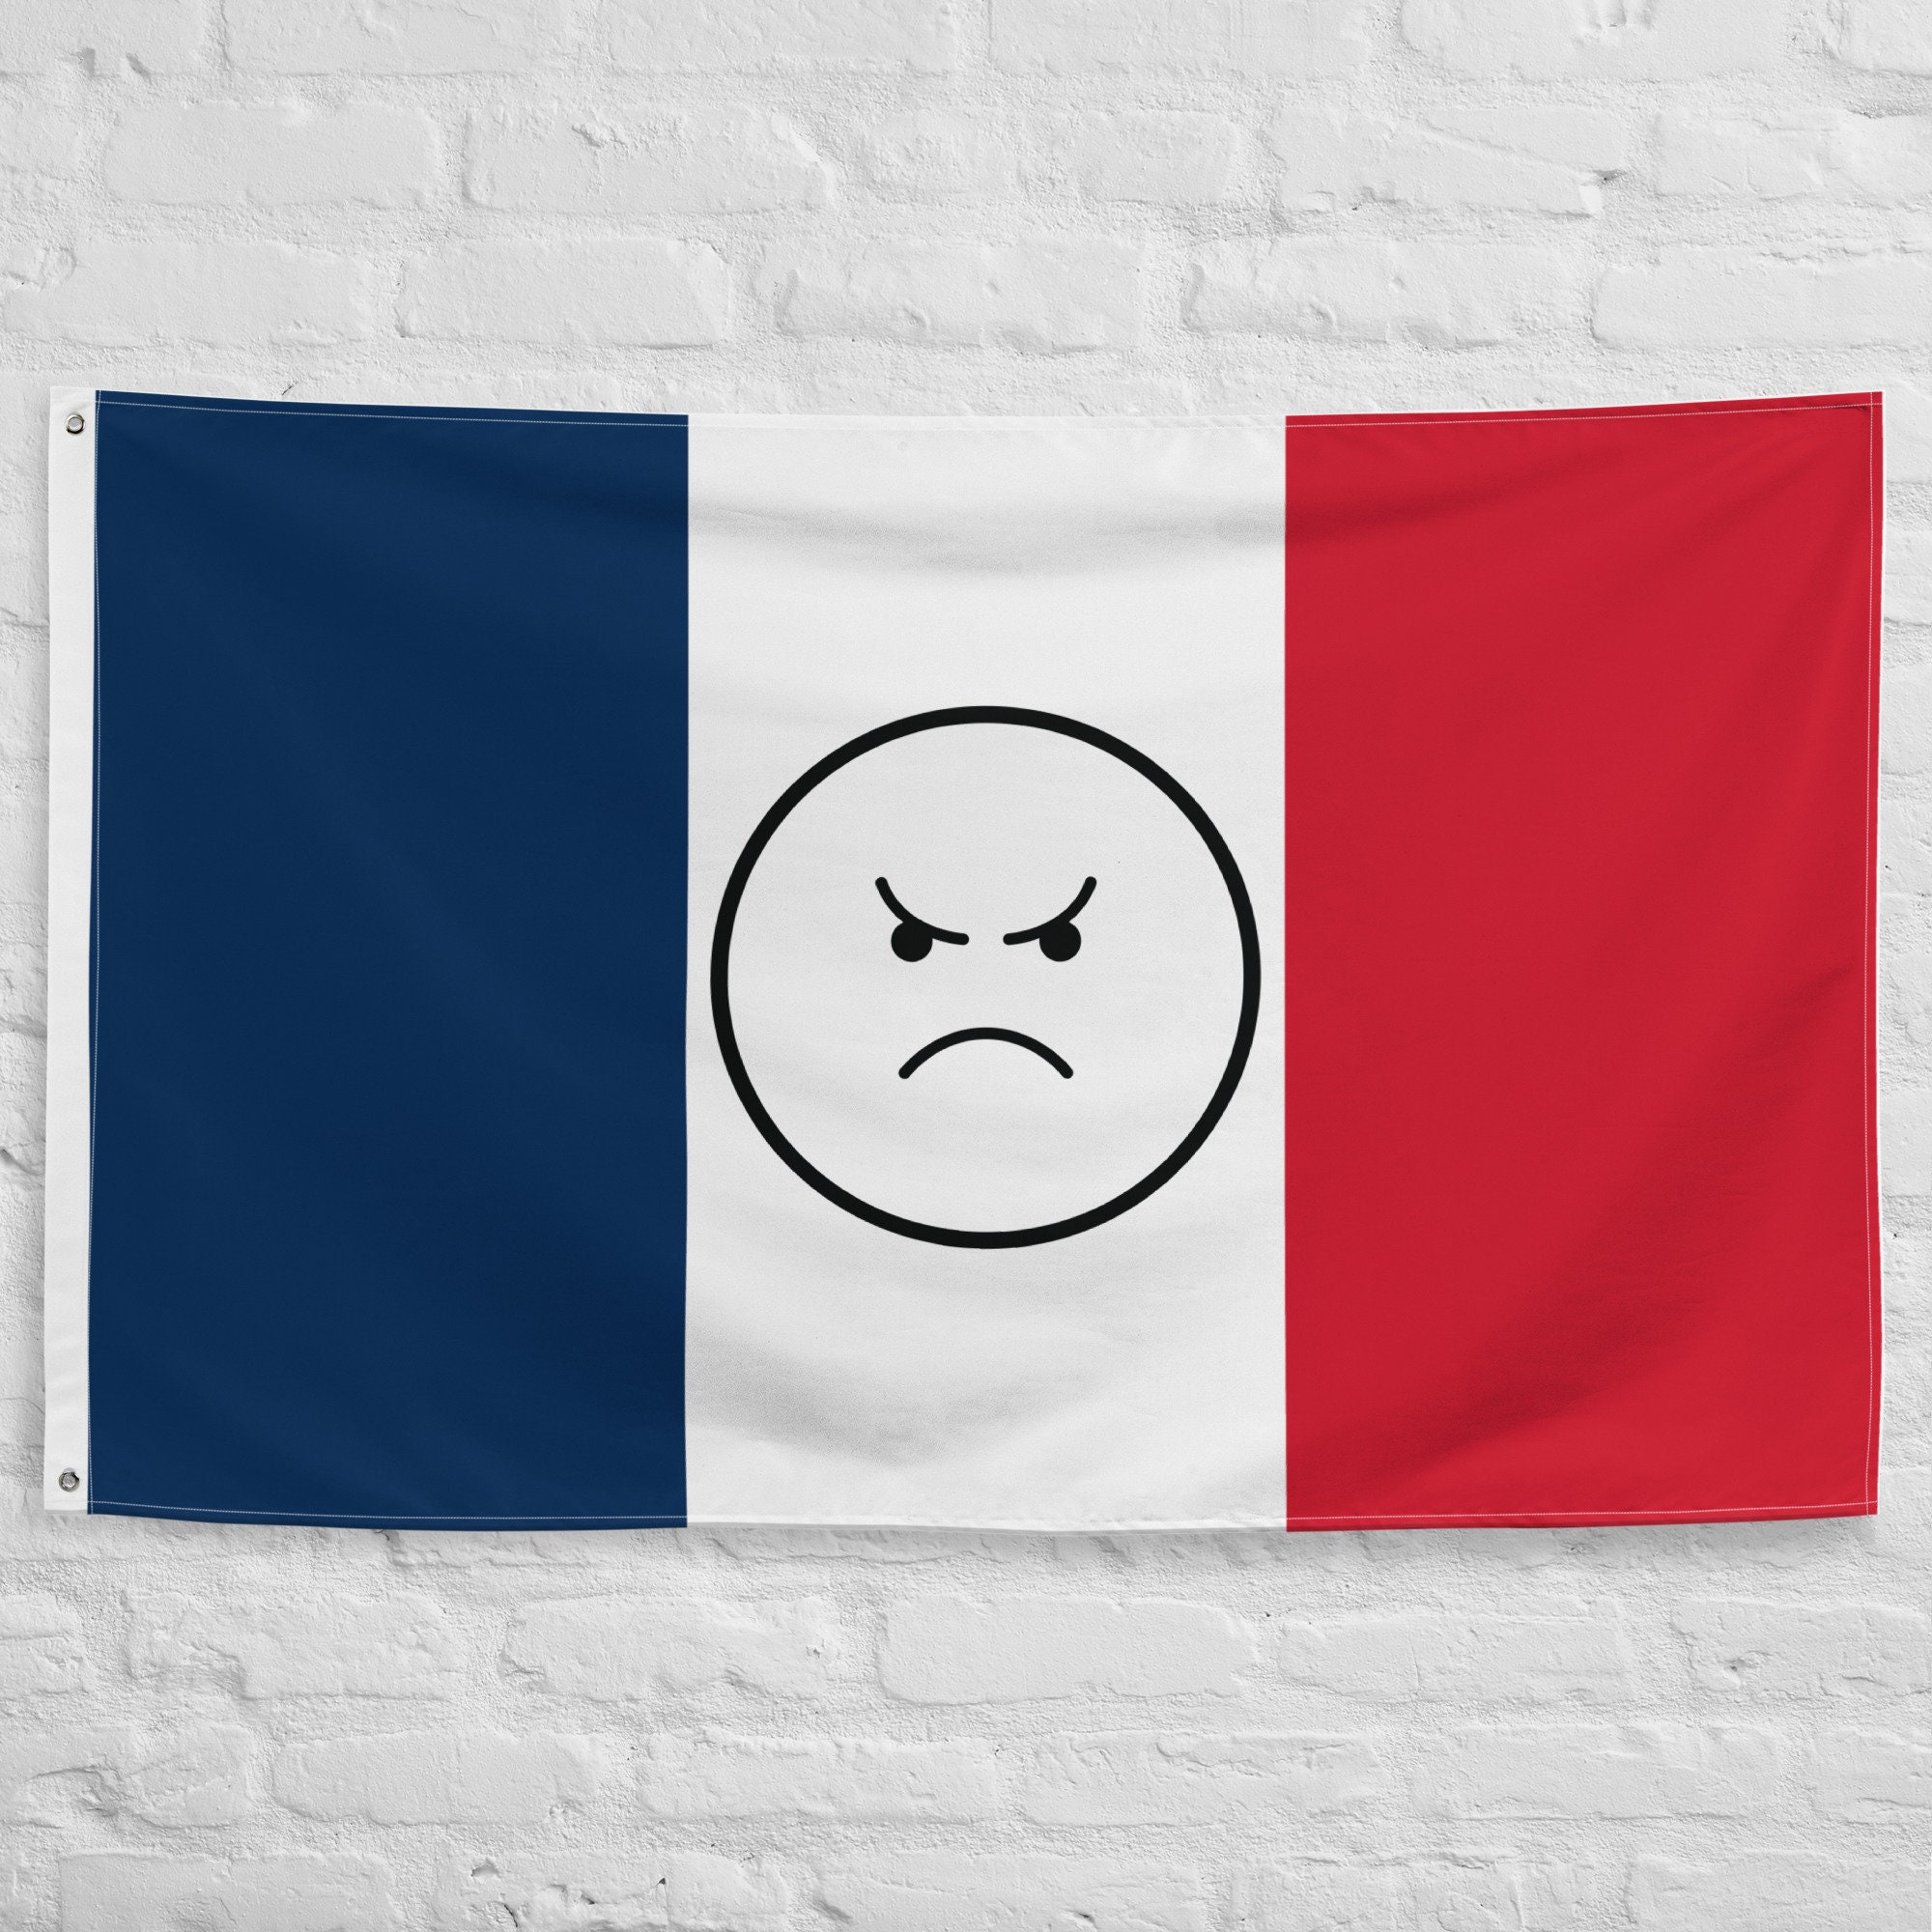 Cœur drapeau français. French flag in heart shape. Stock Vector